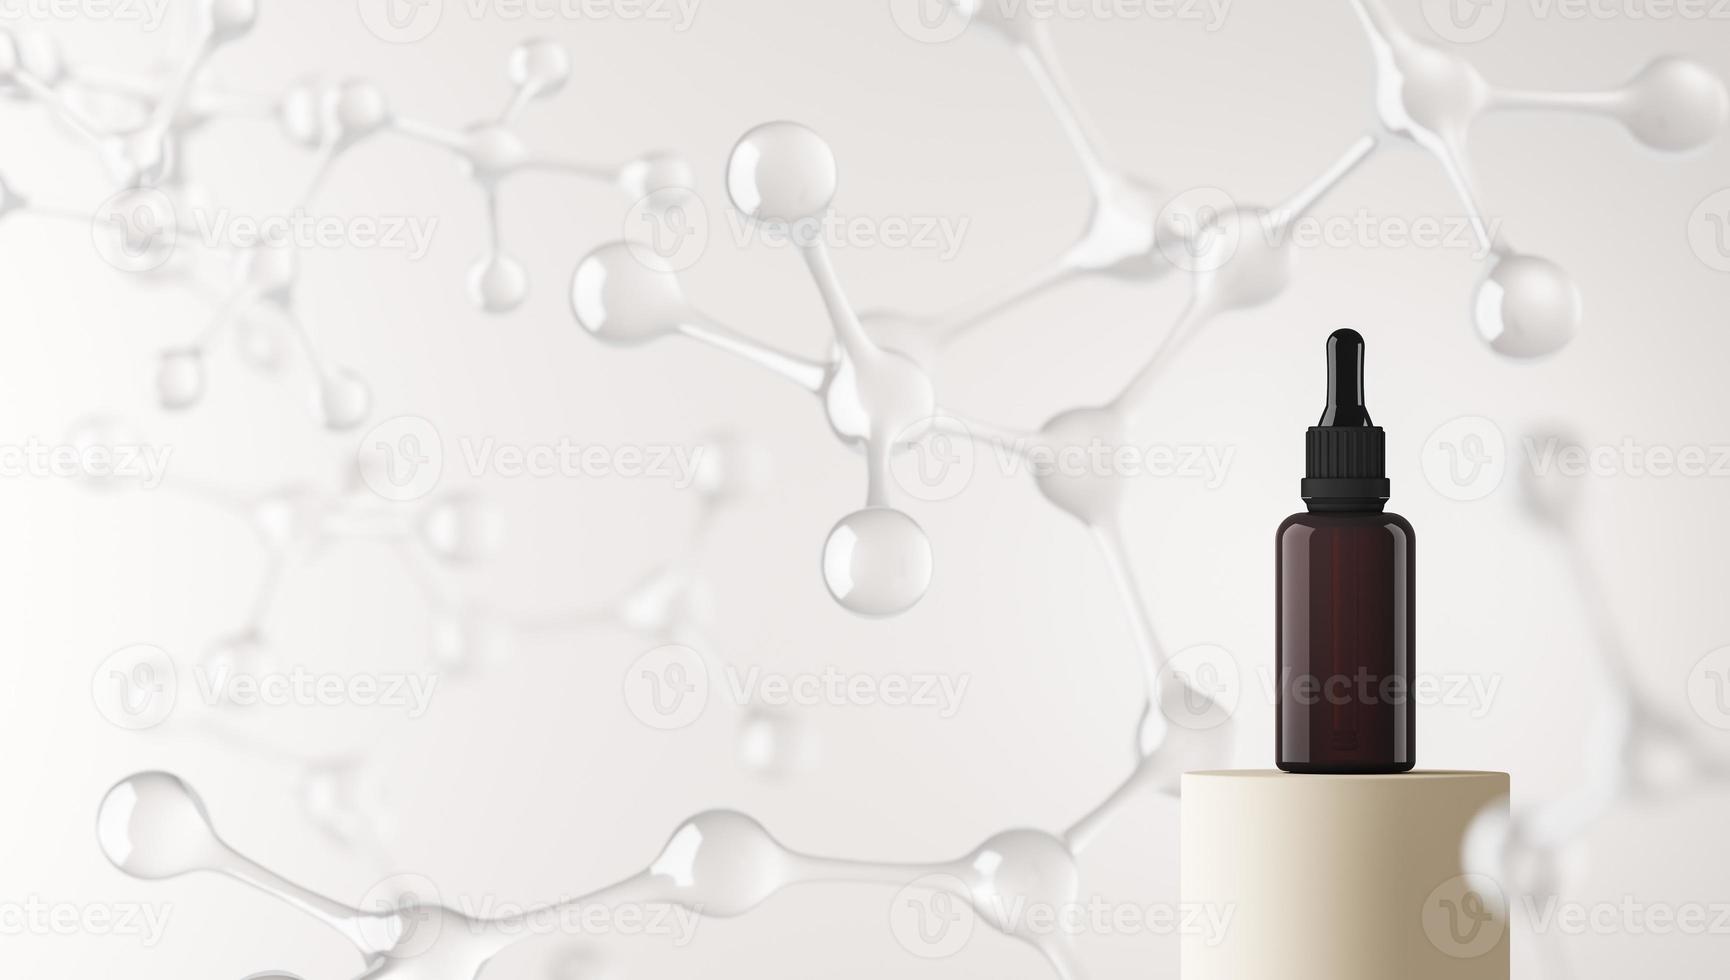 botella cuentagotas de maqueta en la plataforma y fondo de moléculas borrosas, fondo abstracto para presentación cosmética o marca. representación 3d foto